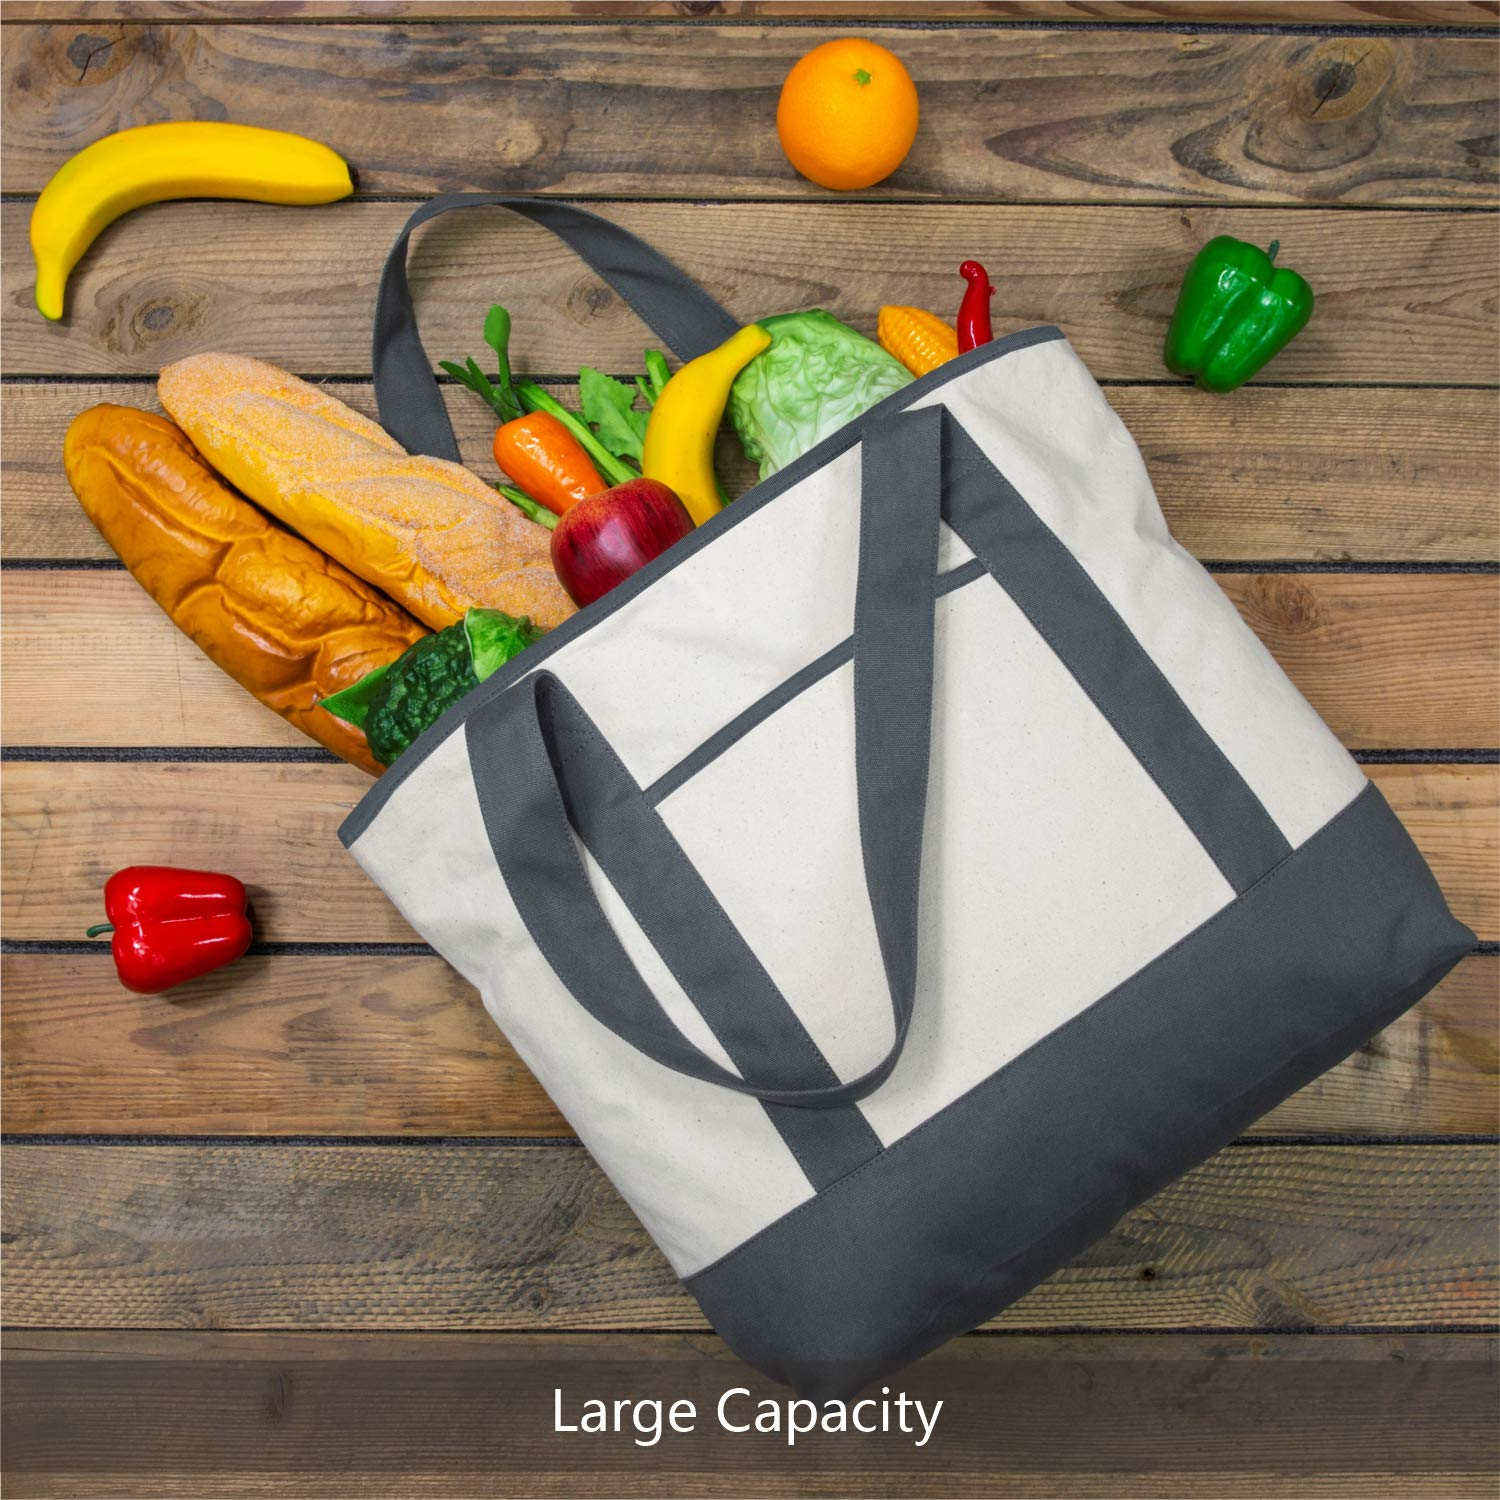 Großvolumige, offene, wärmeisolierte Kühltasche aus Baumwolle für Lebensmittel mit Außen- und Innentaschen